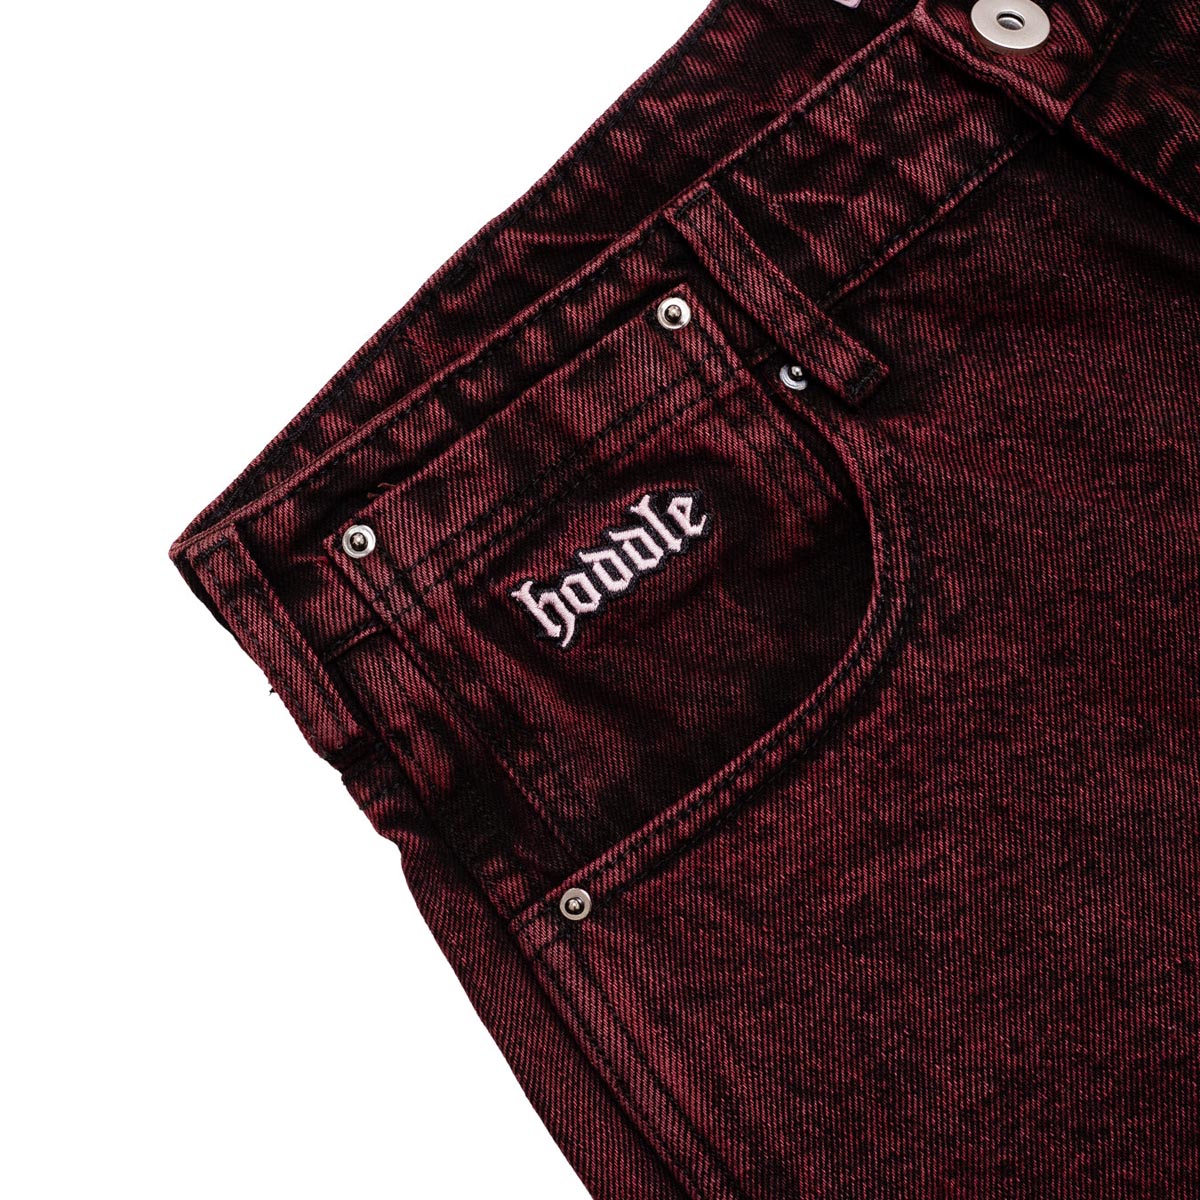 Hoddle 16o Denim Ranger Jeans - Red Wash image 3